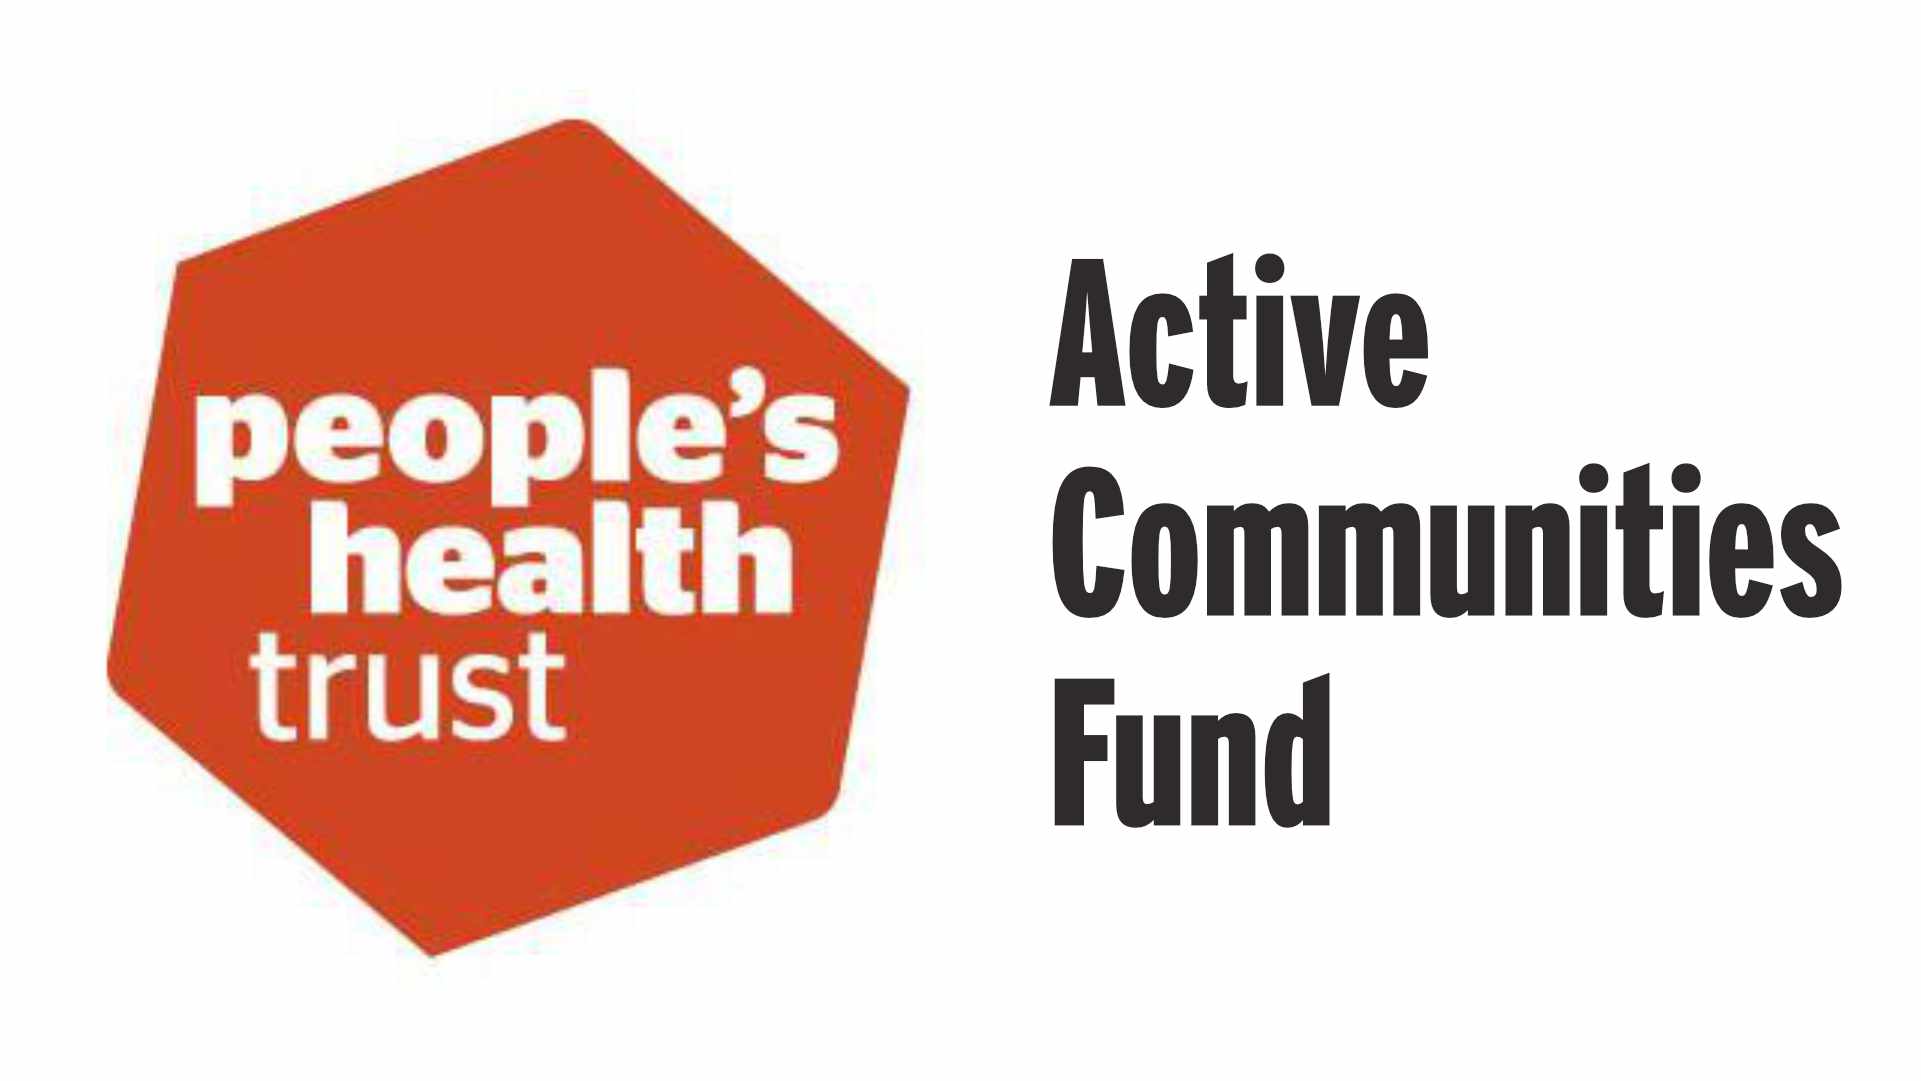 People’s Health Trust – Active Communities Fund